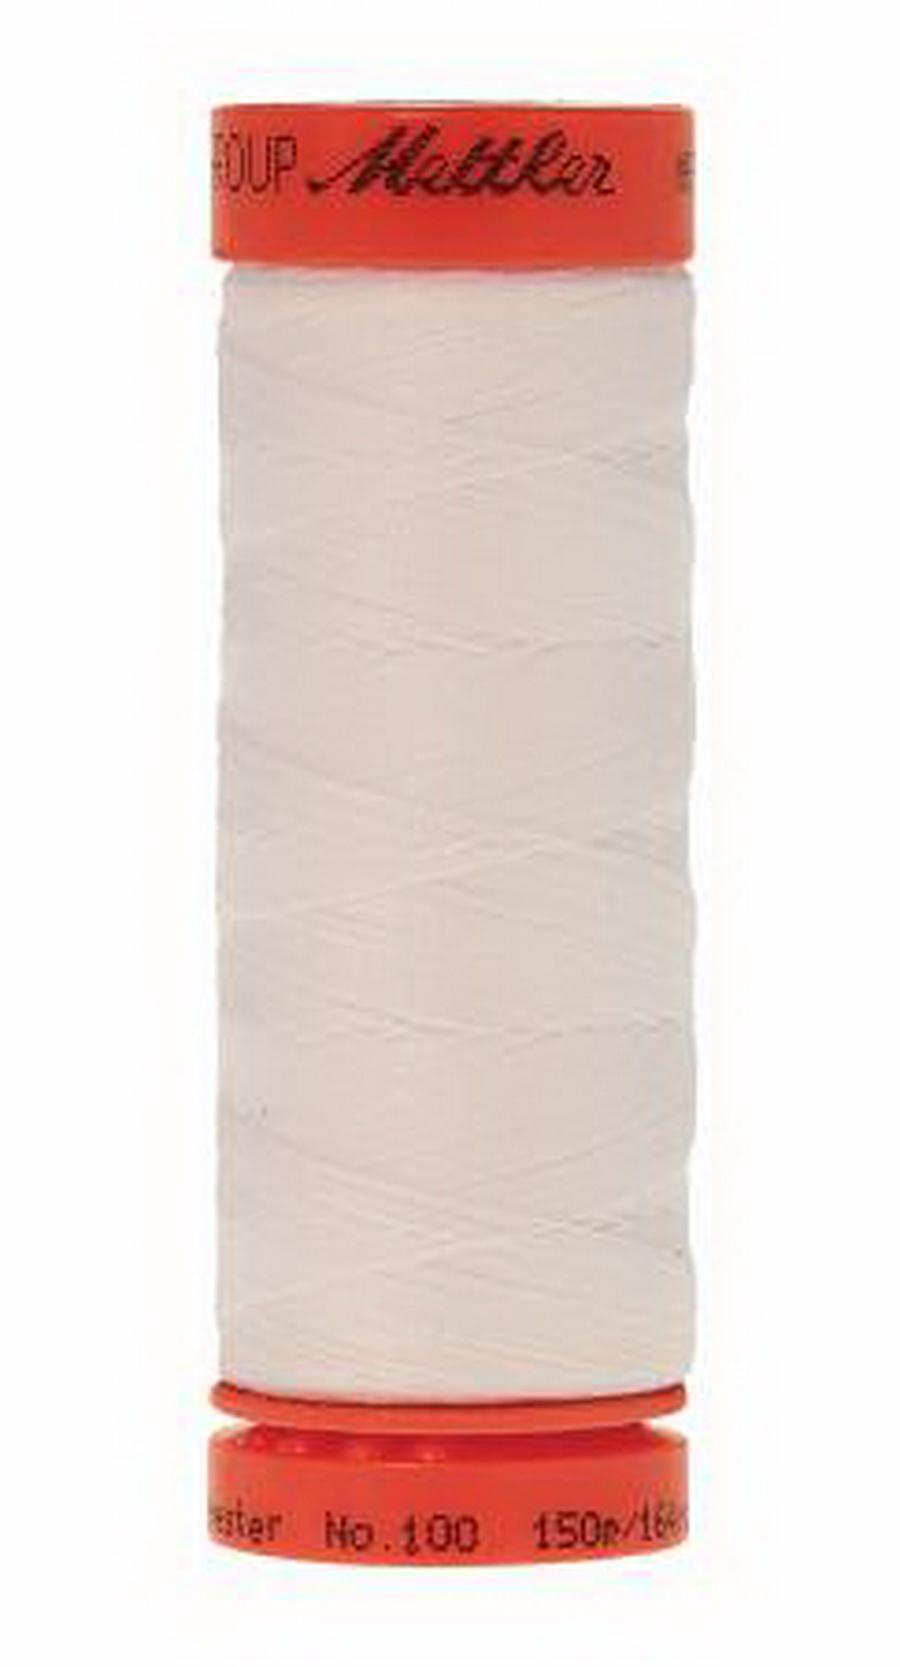 Mettler Metrosene Plus Polyester Thread 164 Yards - Color White (9161-2000)